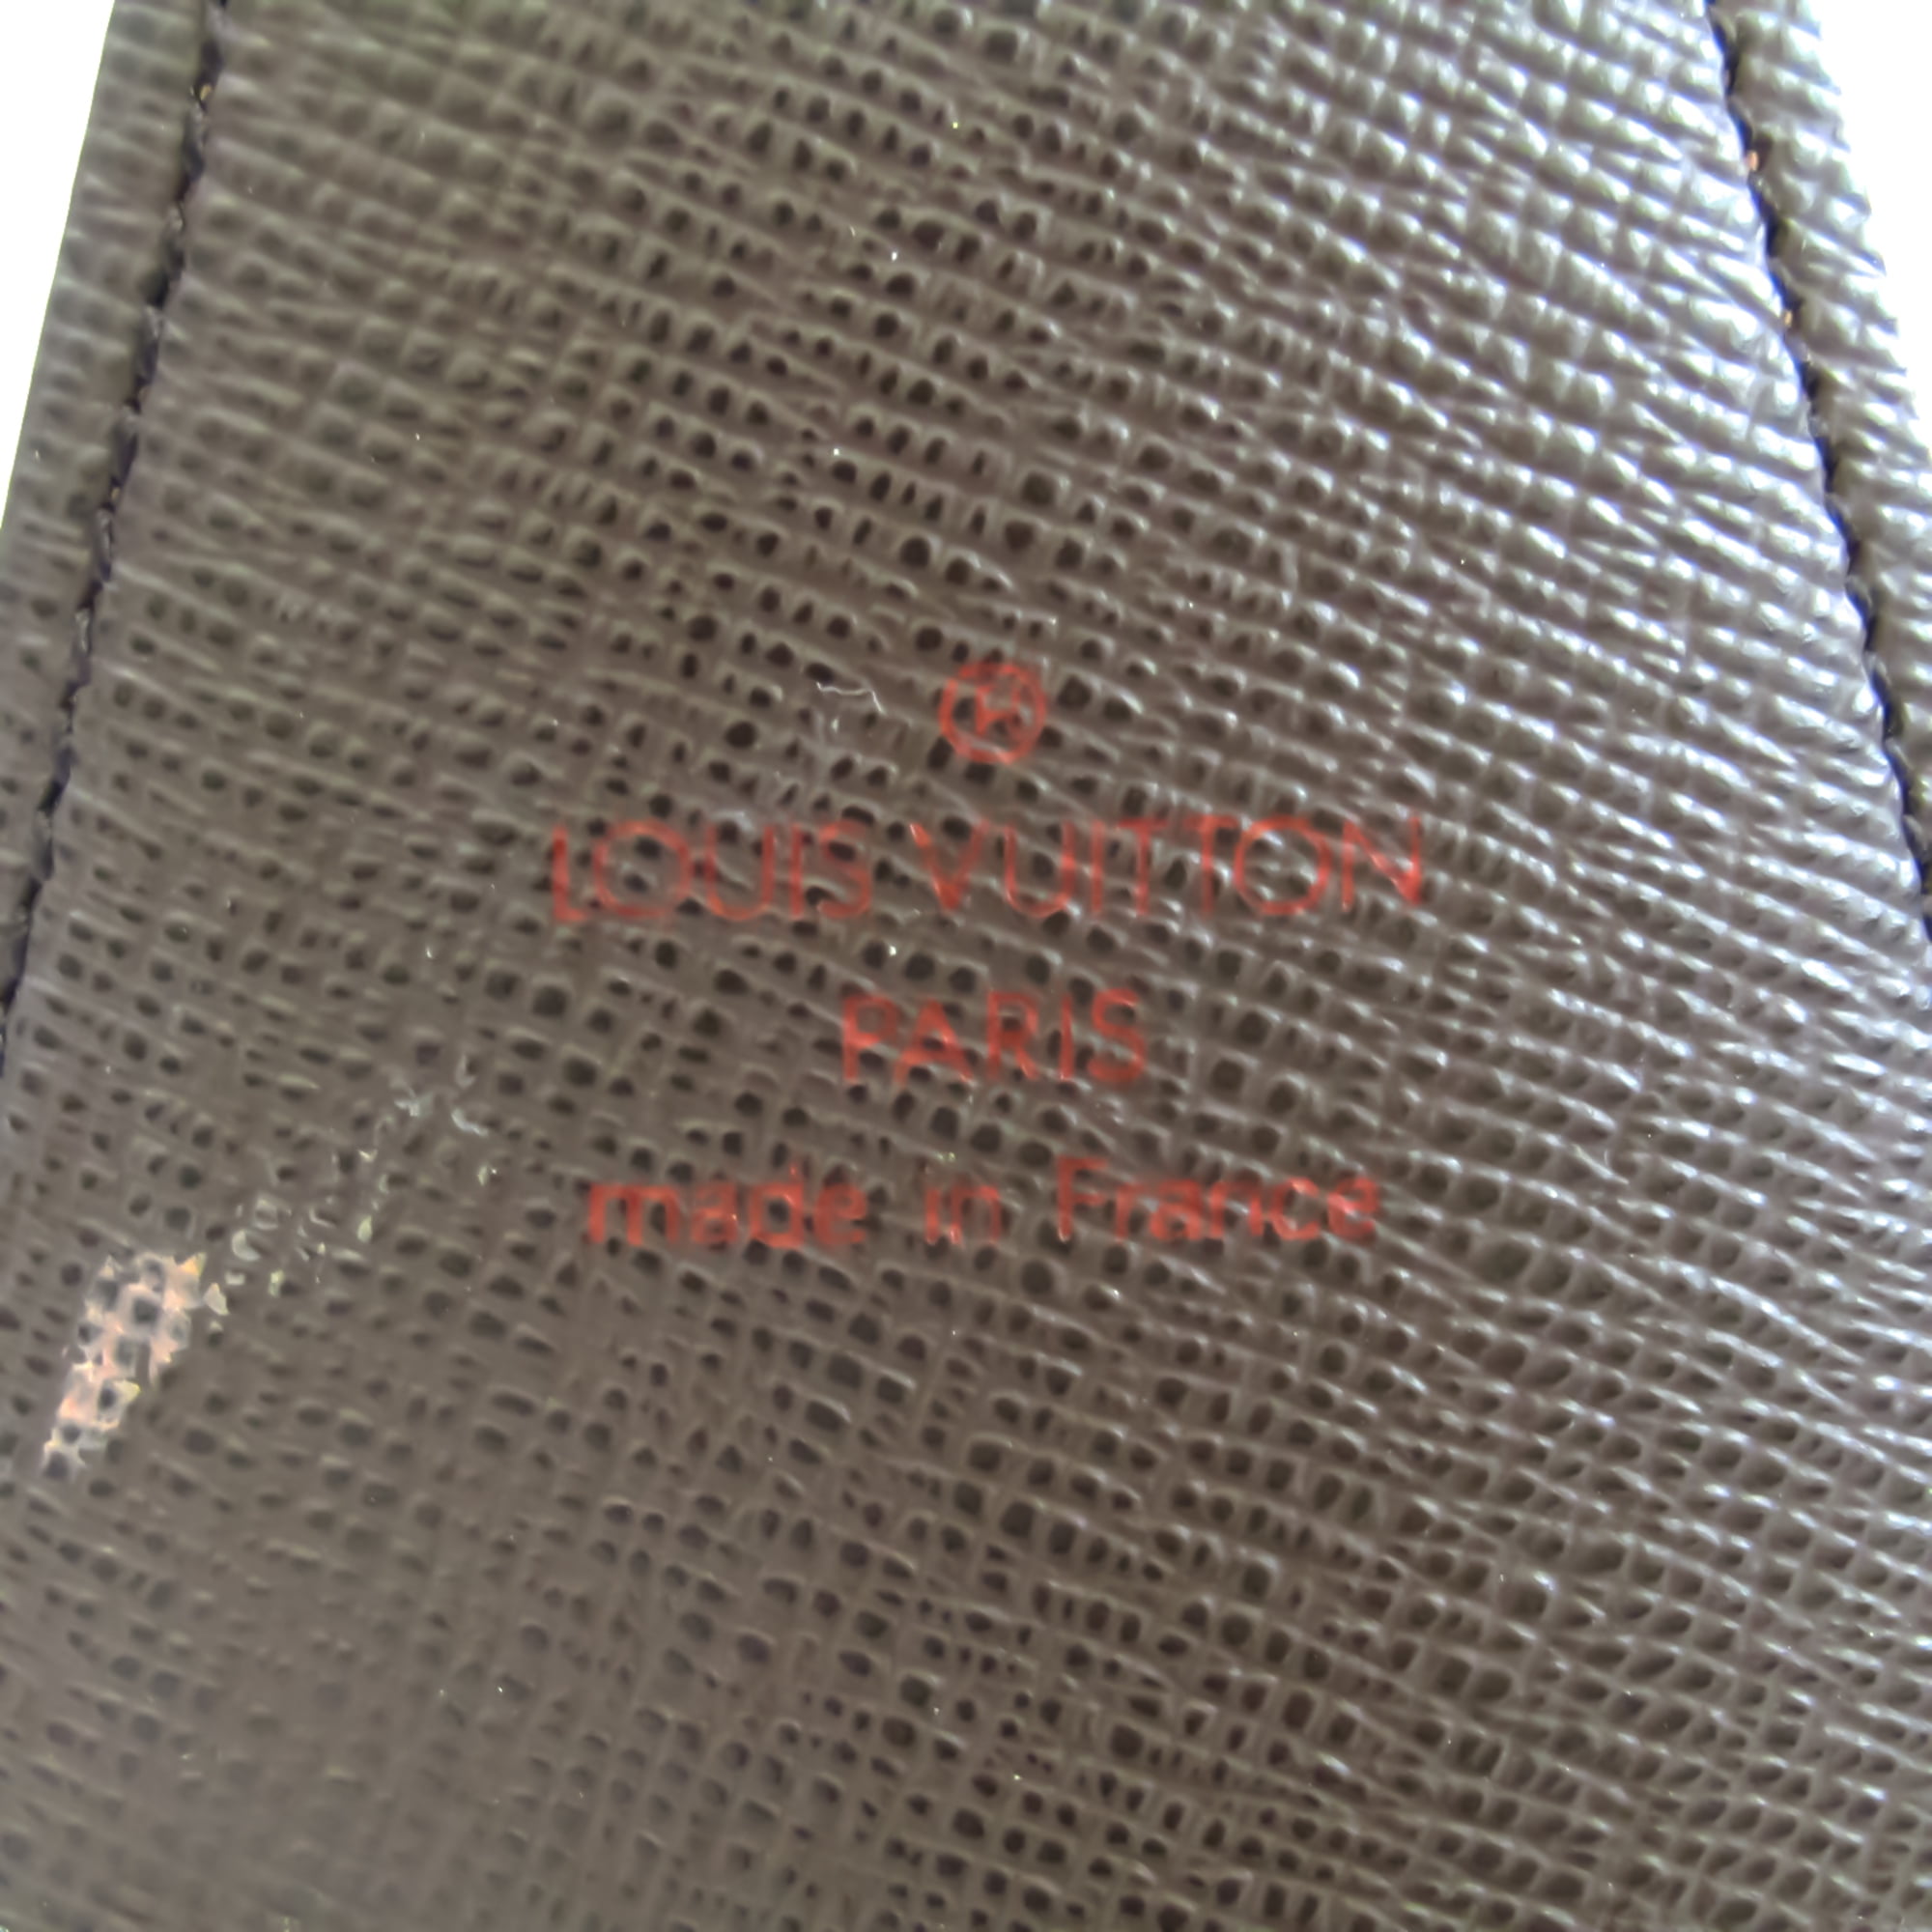 Auth Louis Vuitton Monogram Cigarette Case N63024 PVC Leather Tobacco Case  LV